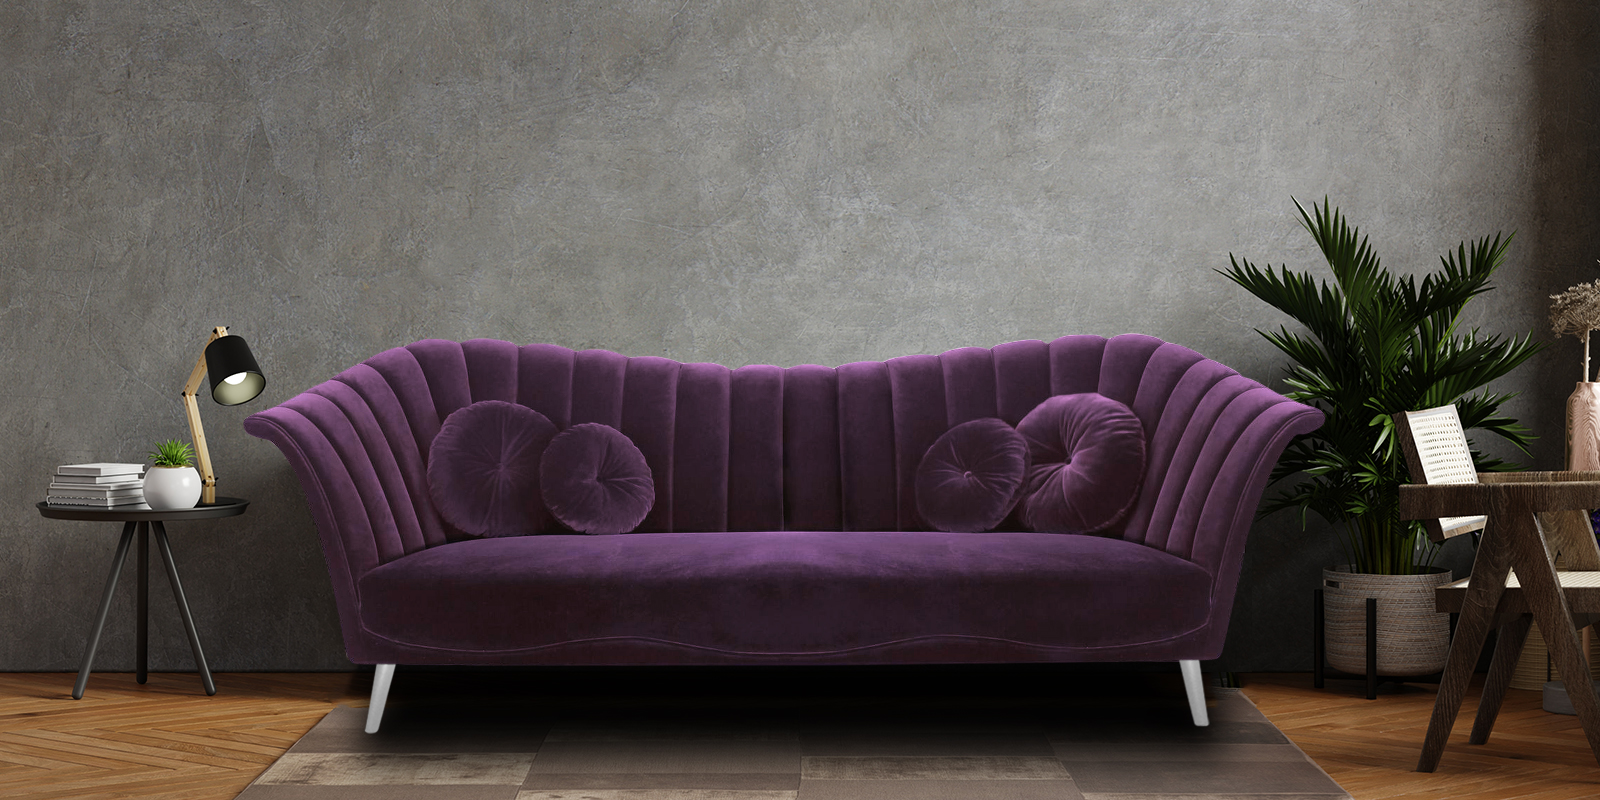 Ikon Fabric 3 Seater Sofa in Dark Purple Colour - Dreamzz ...